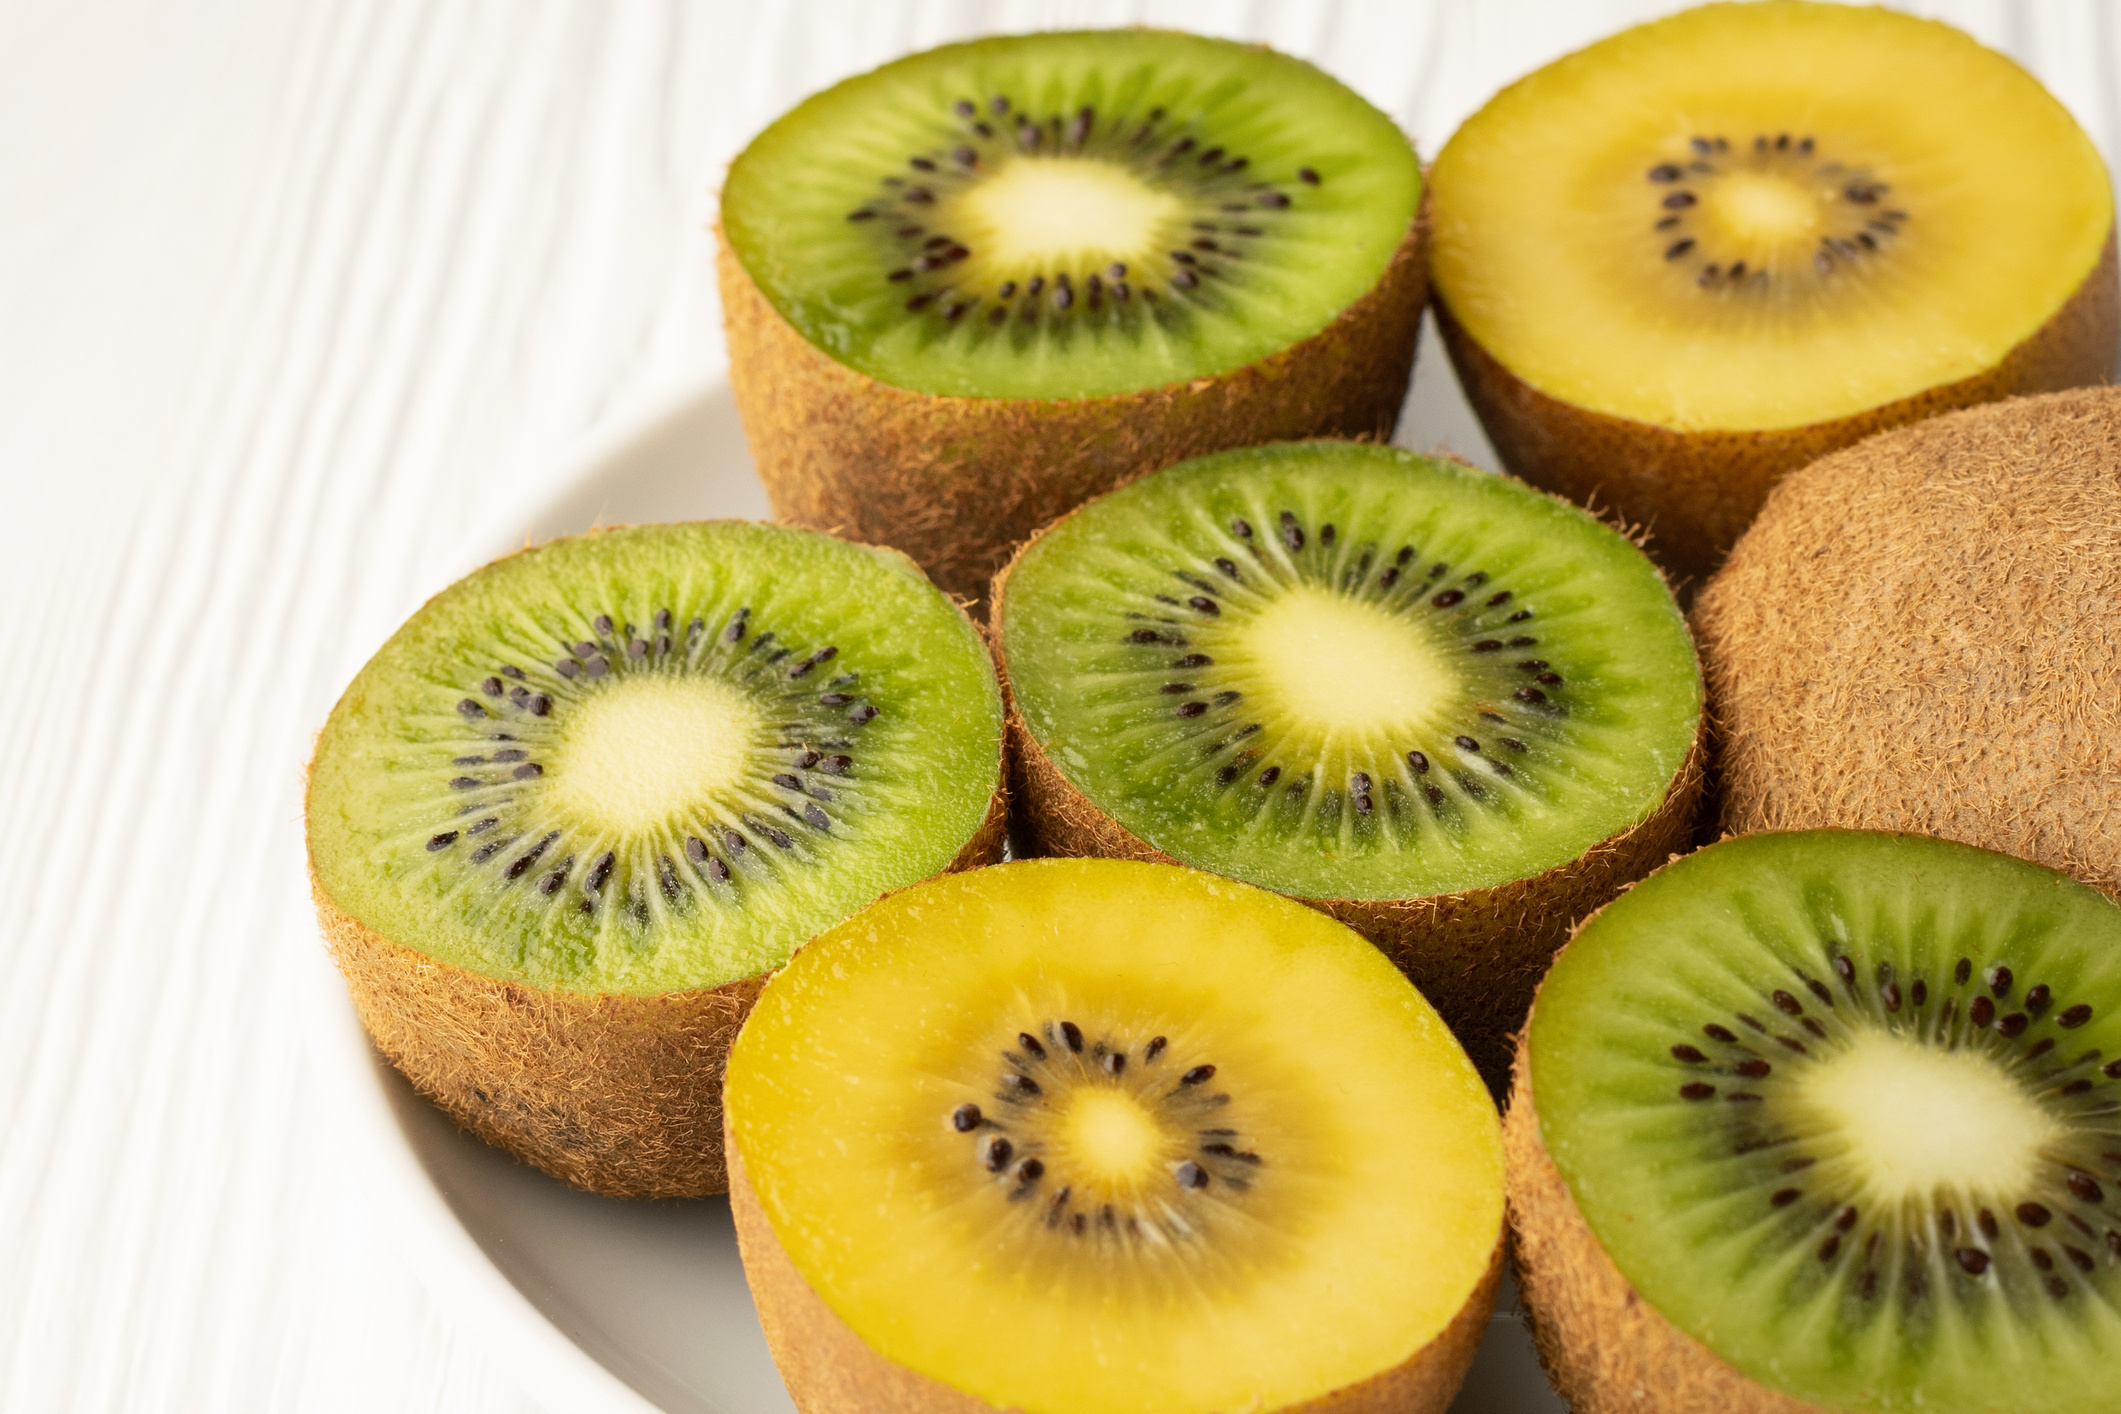 Green kiwi fruit, Health properties, Sport nutrition, Refreshing snack, 2130x1420 HD Desktop